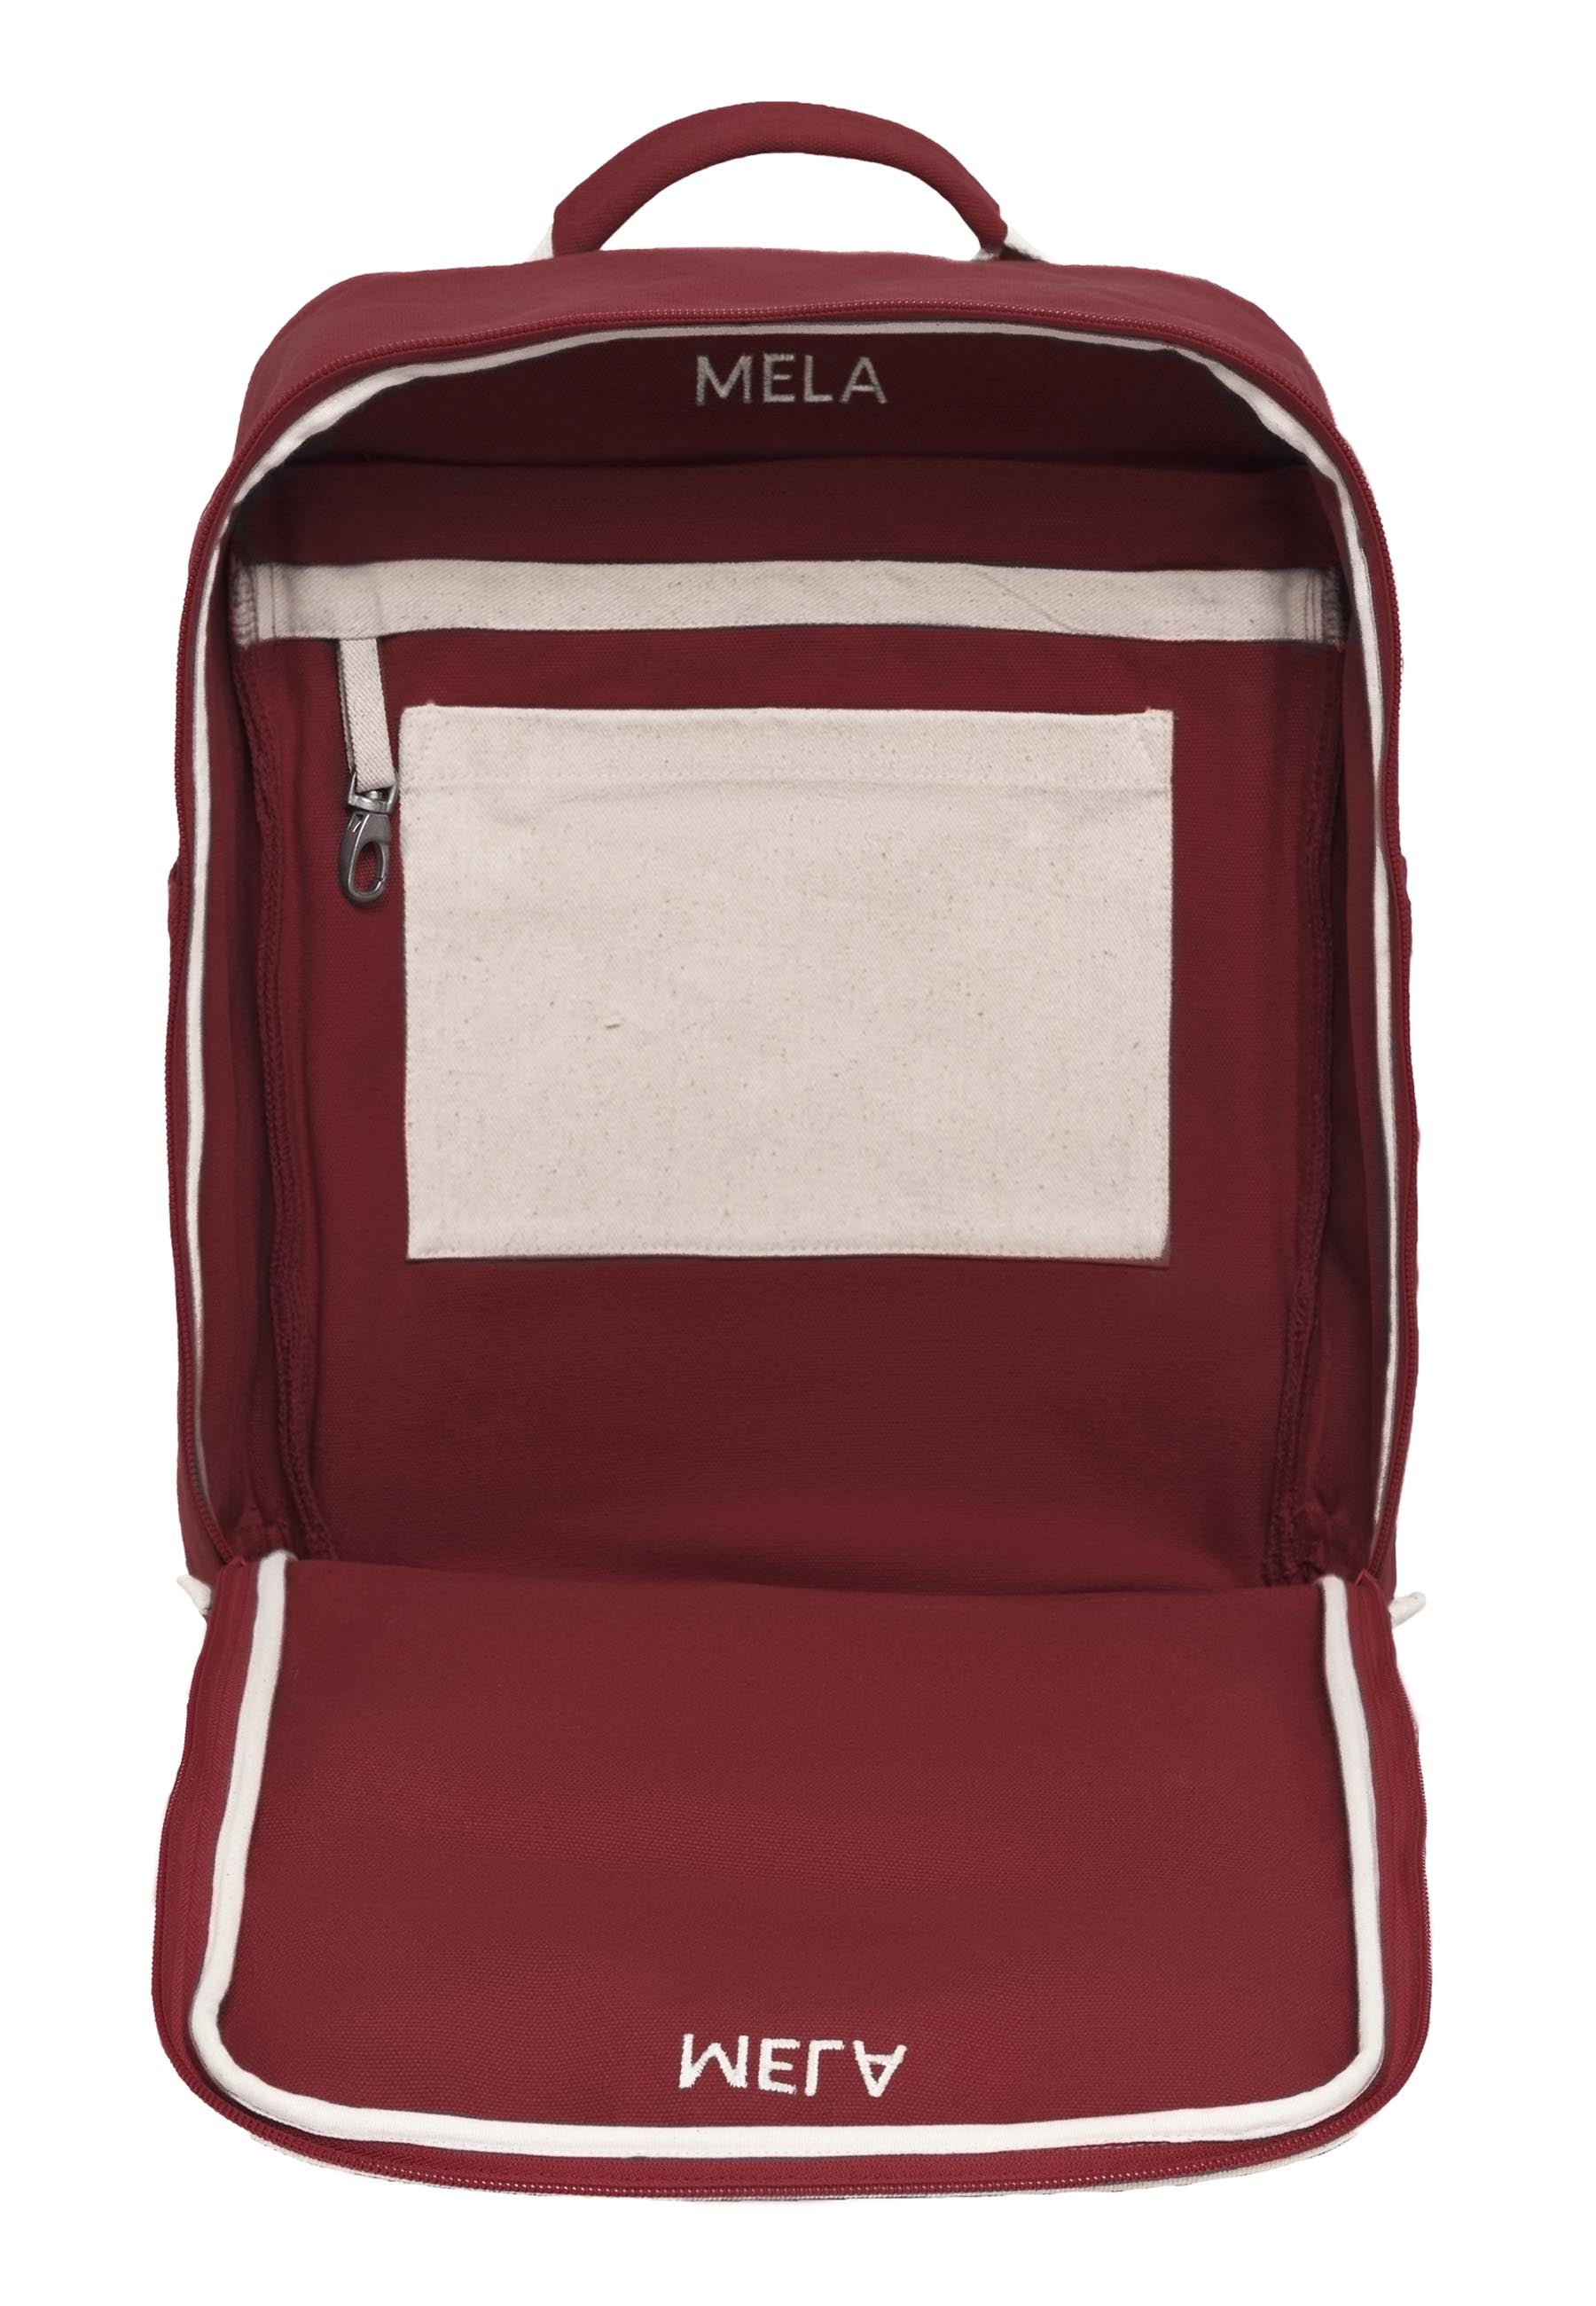 Melawear - MELA II hátizsák - Vörös